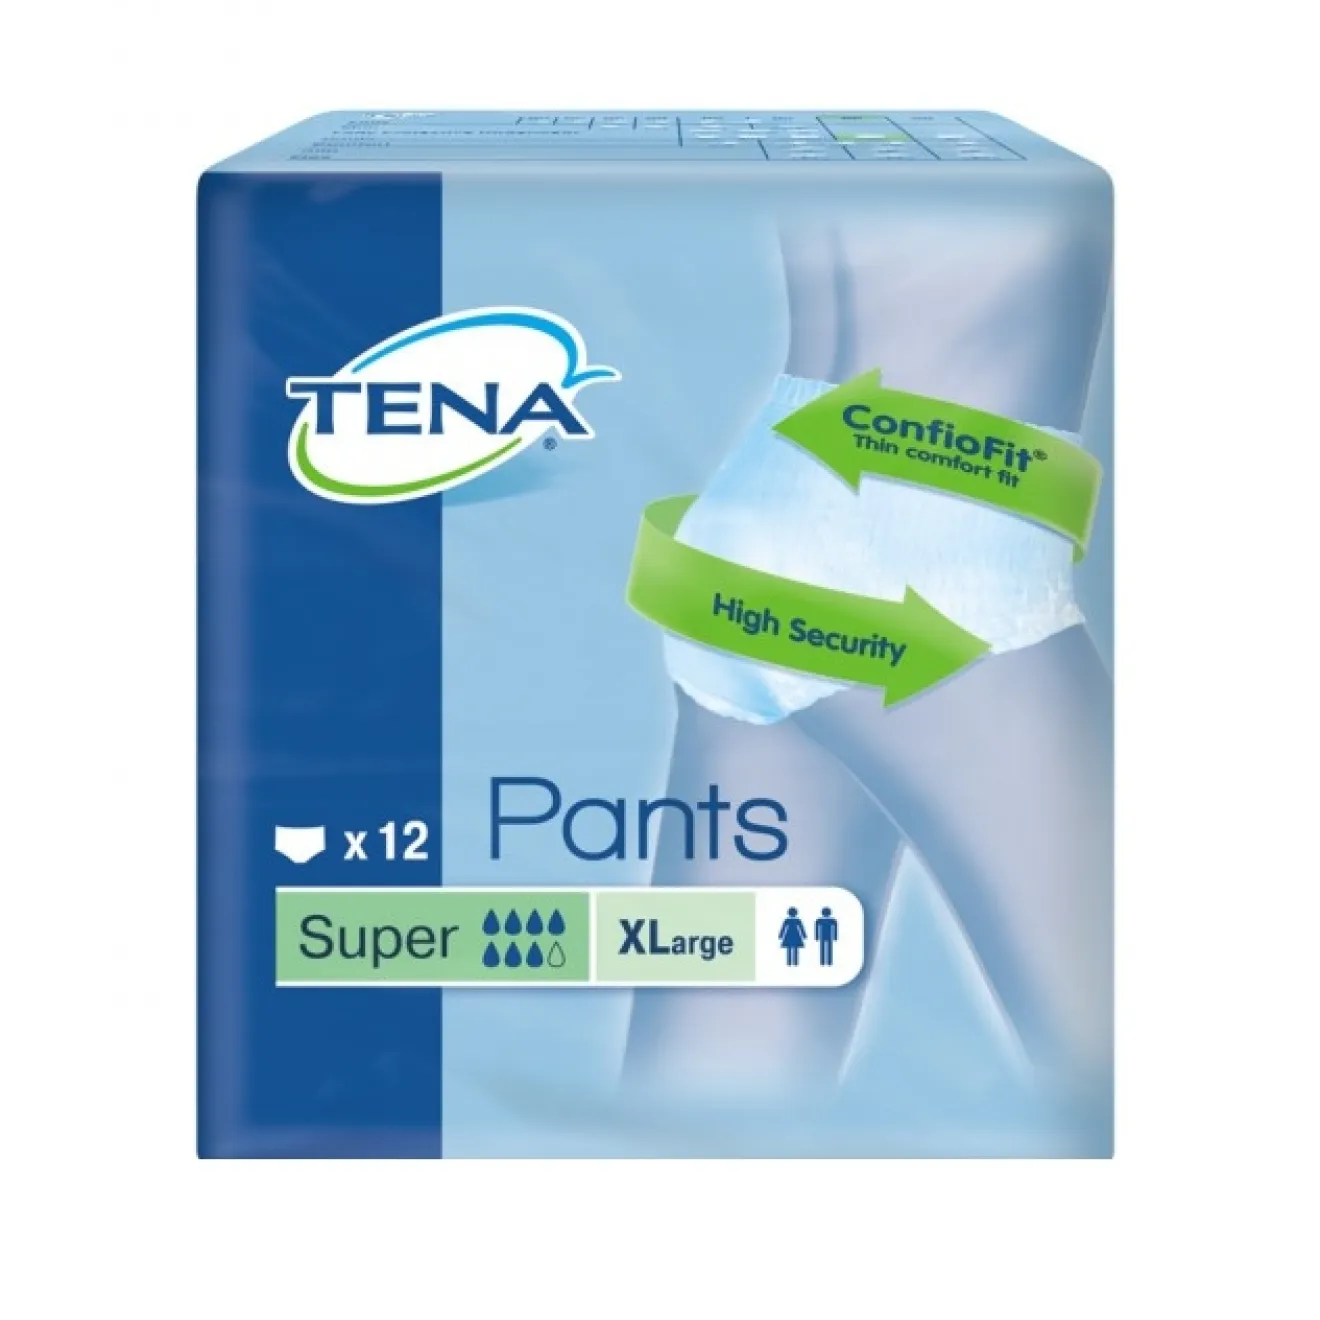 TENA Pants ConfioFit Super XL 12 ST